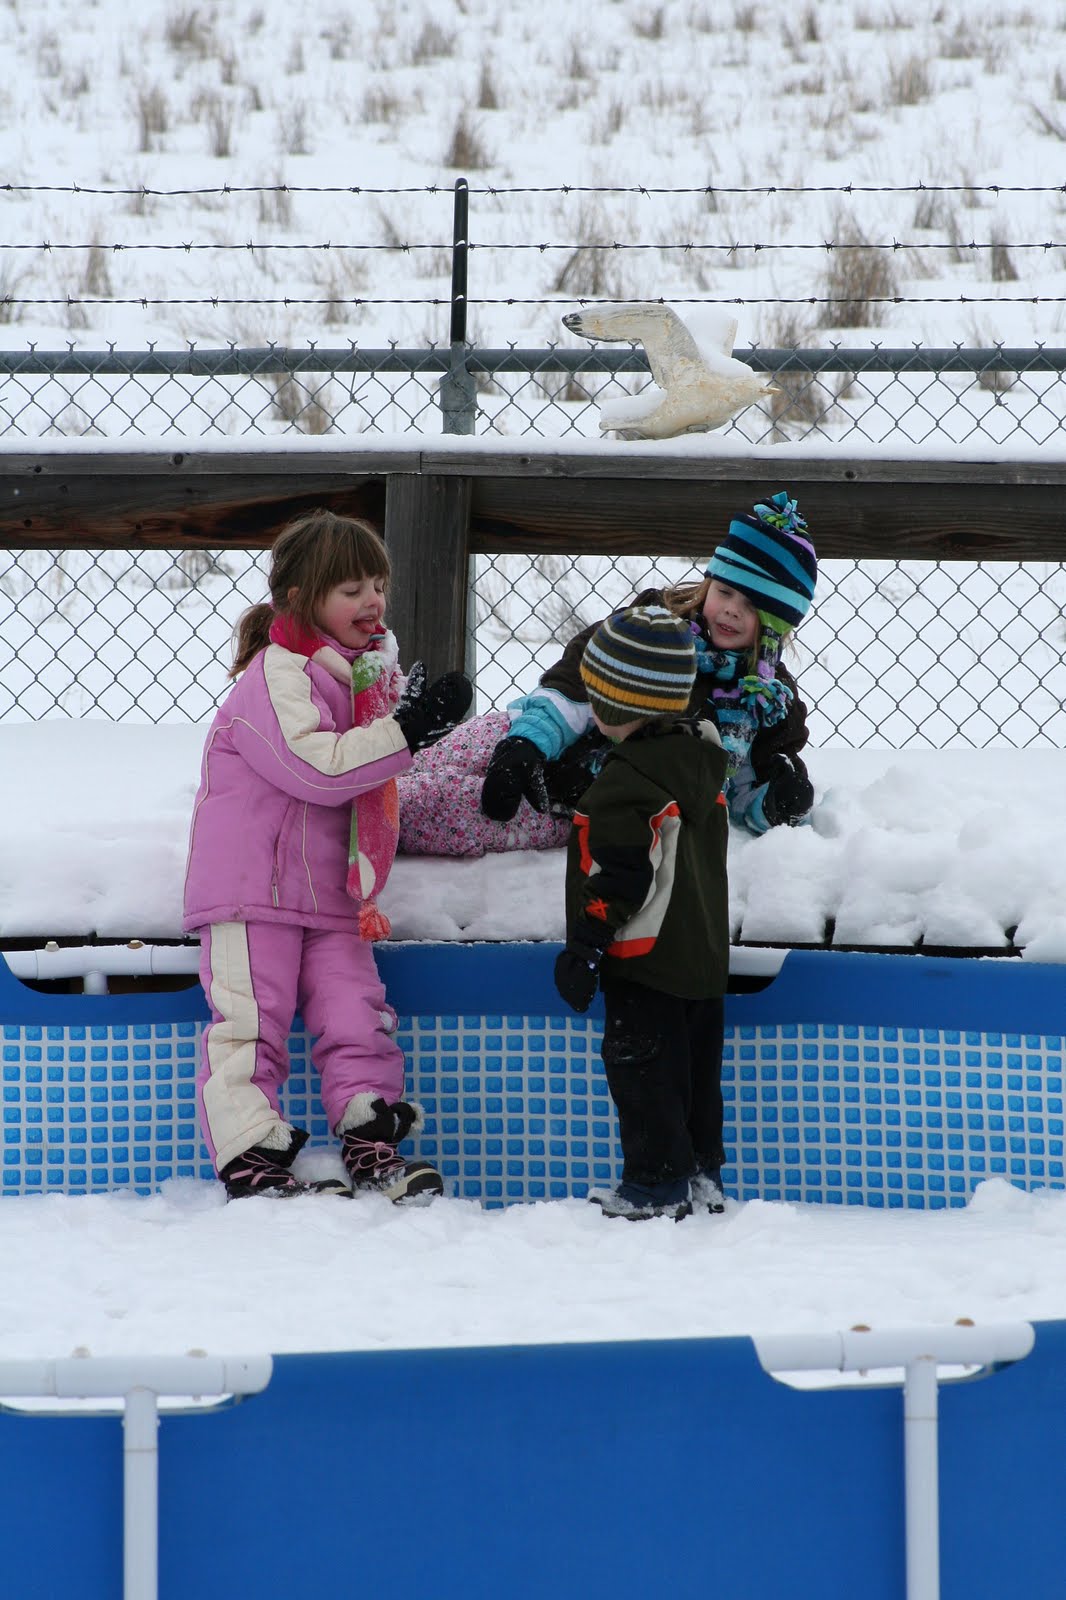 [snow+pool+kids.jpg]